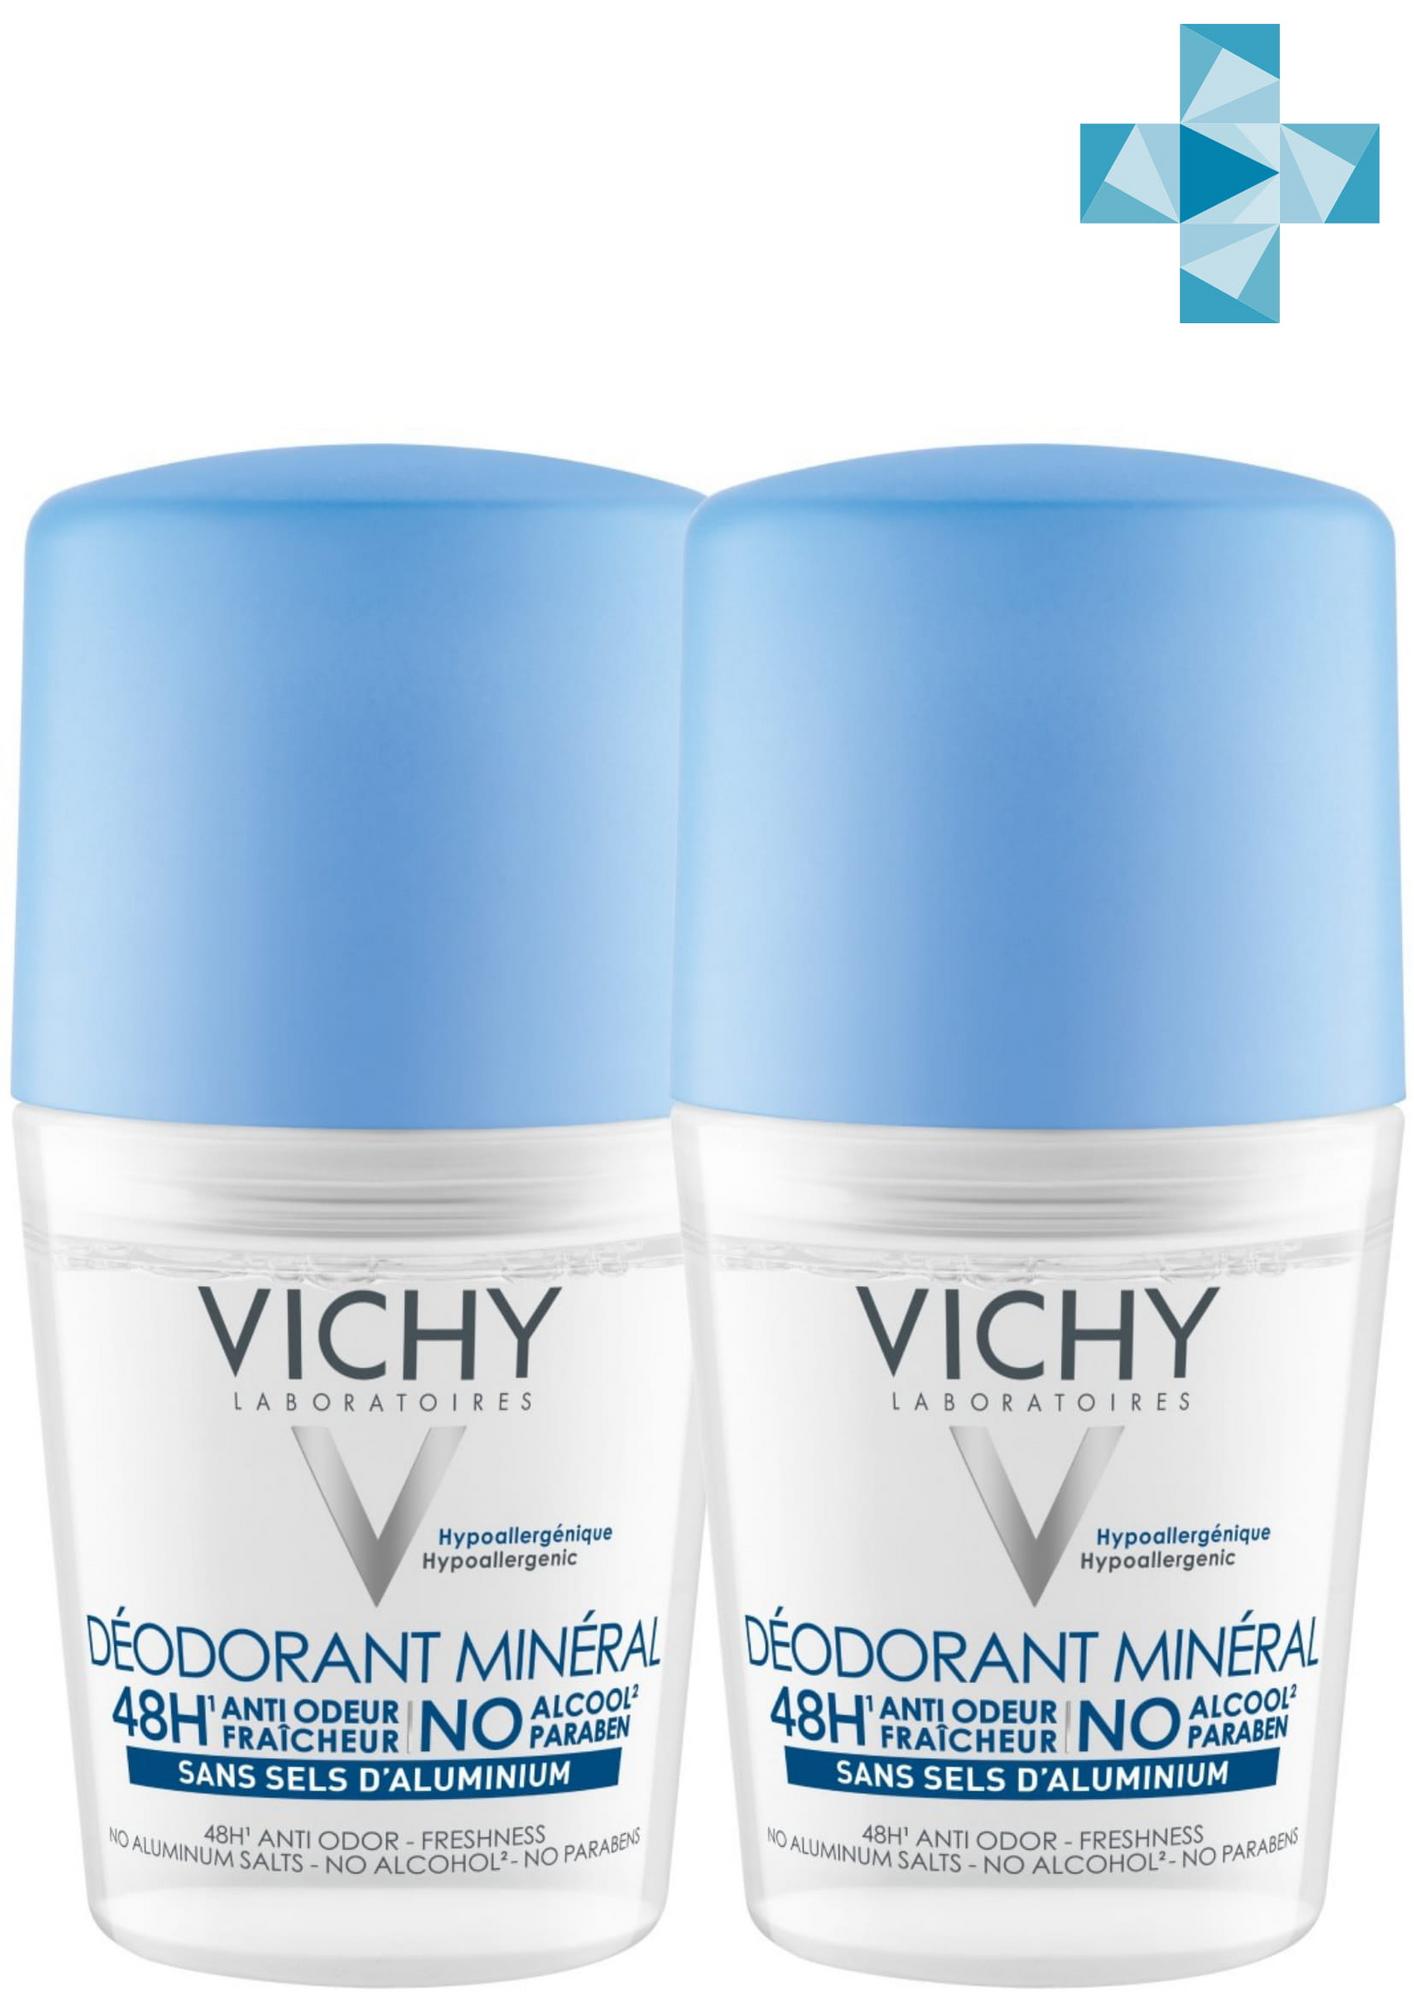 Купить Vichy Комплект Минеральный дезодорант без солей алюминия 48 часов свежести, 2 шт. по 50 мл (Vichy, Deodorant), Франция